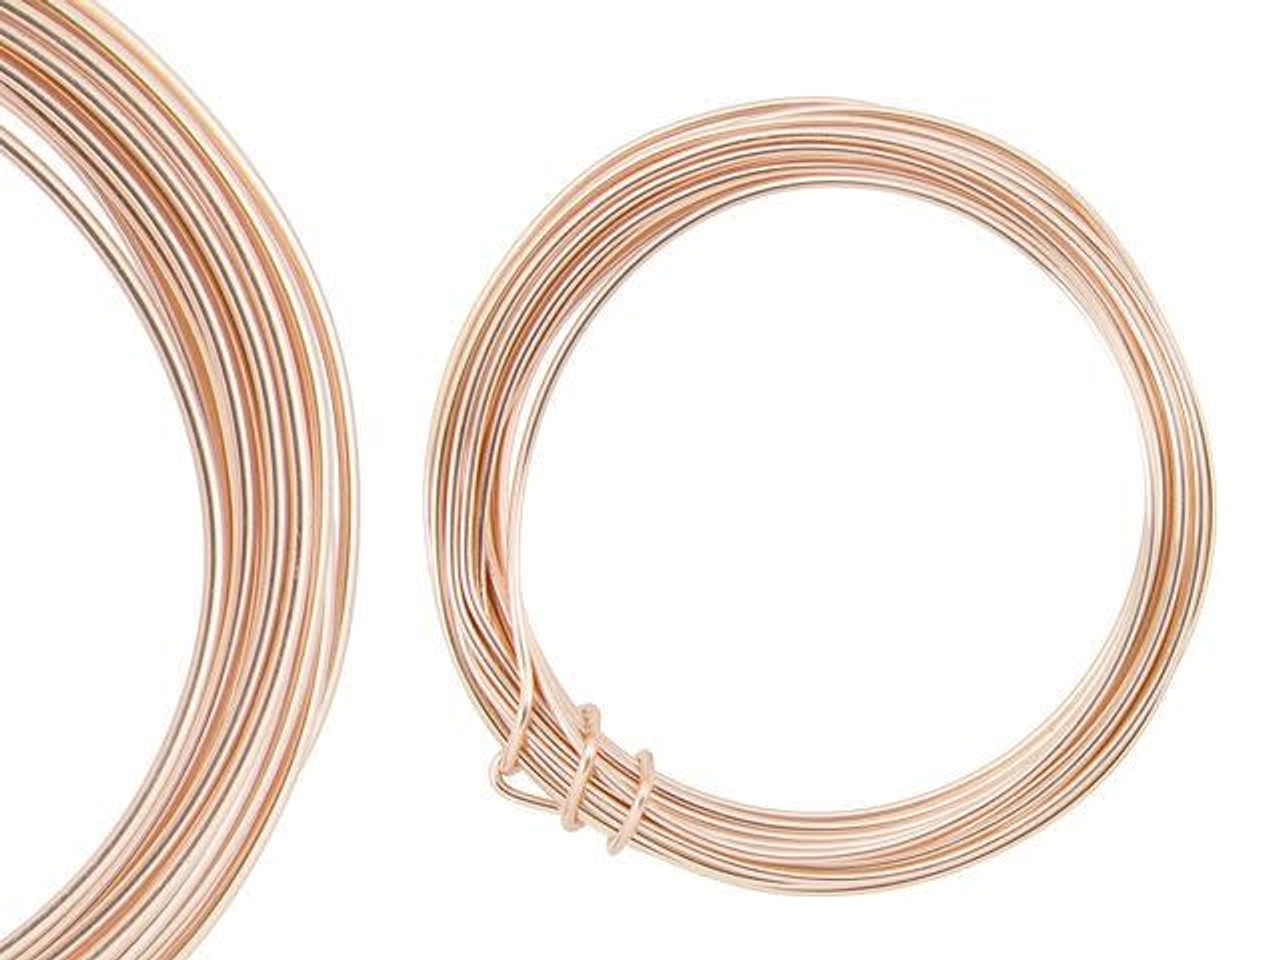 Buy Artisan Copper Wire, 16ga, (15ft) at Vintaj